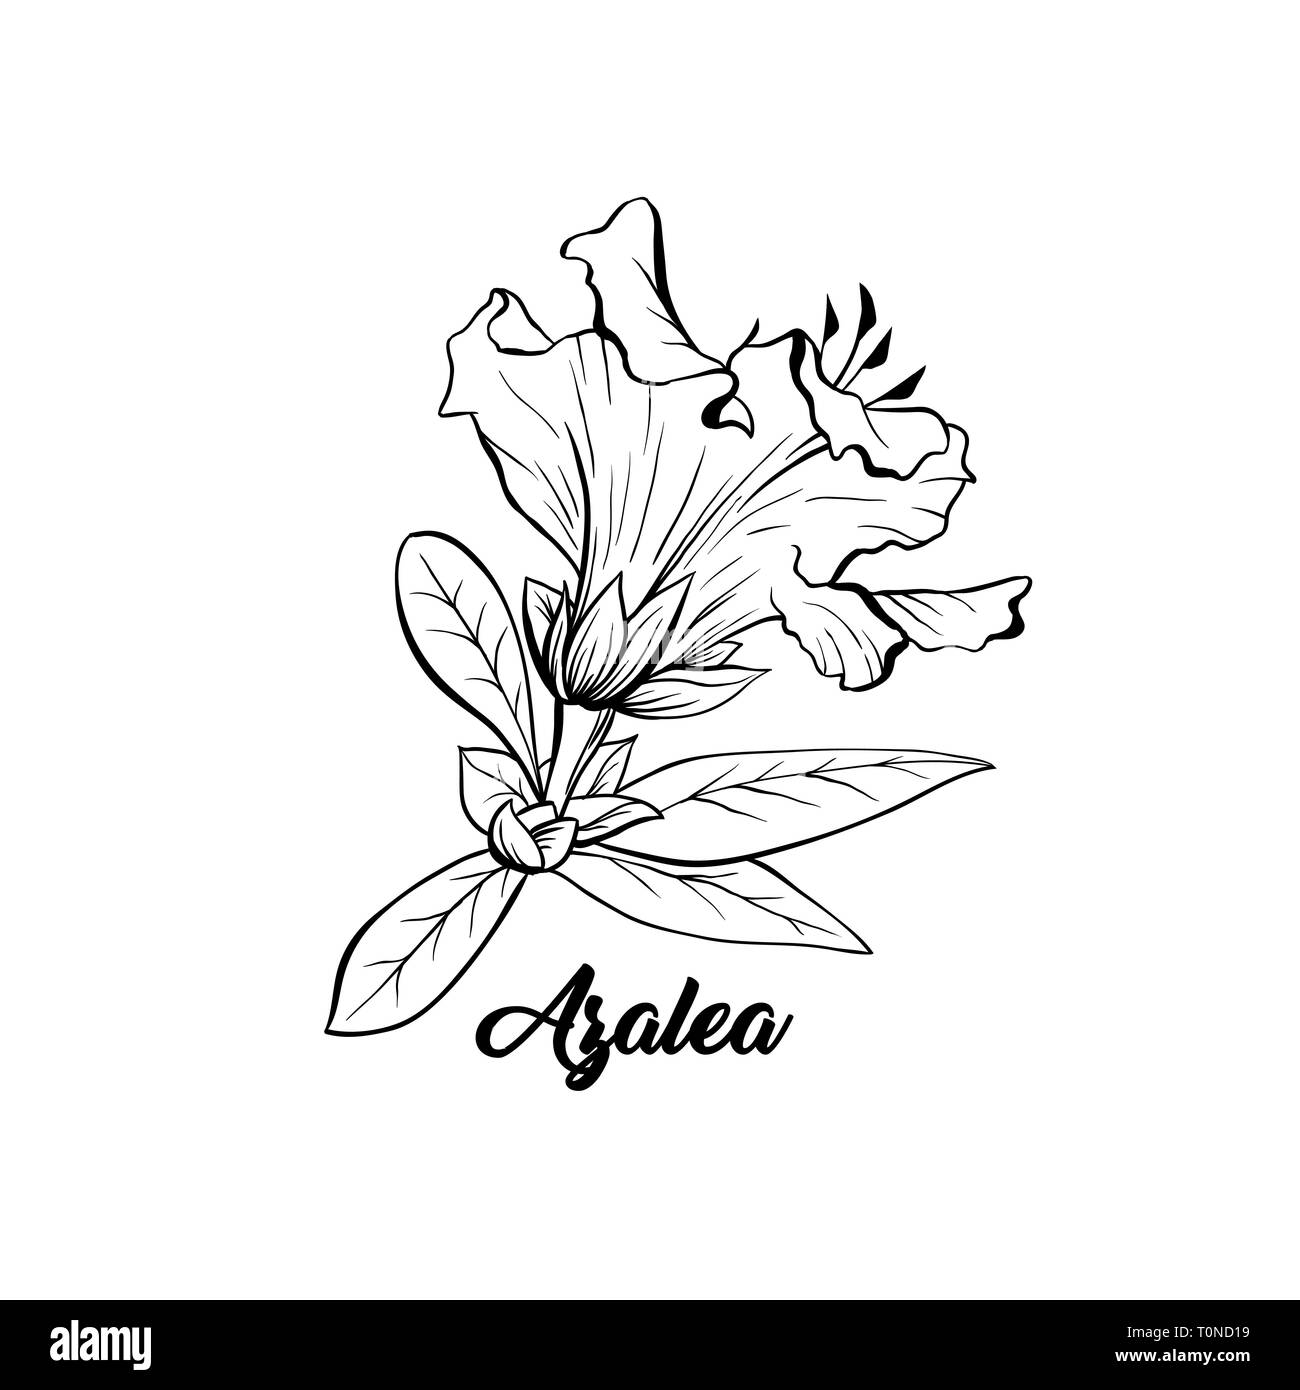 Azalea, Ericaceae japonica flor ilustración dibujada a mano. Hermosa planta  florece la tinta de bolígrafo sketch. Esquema de Freehand flor floral  grabado. Tarjeta de felicitación de elemento de diseño aislado monocromo  Imagen